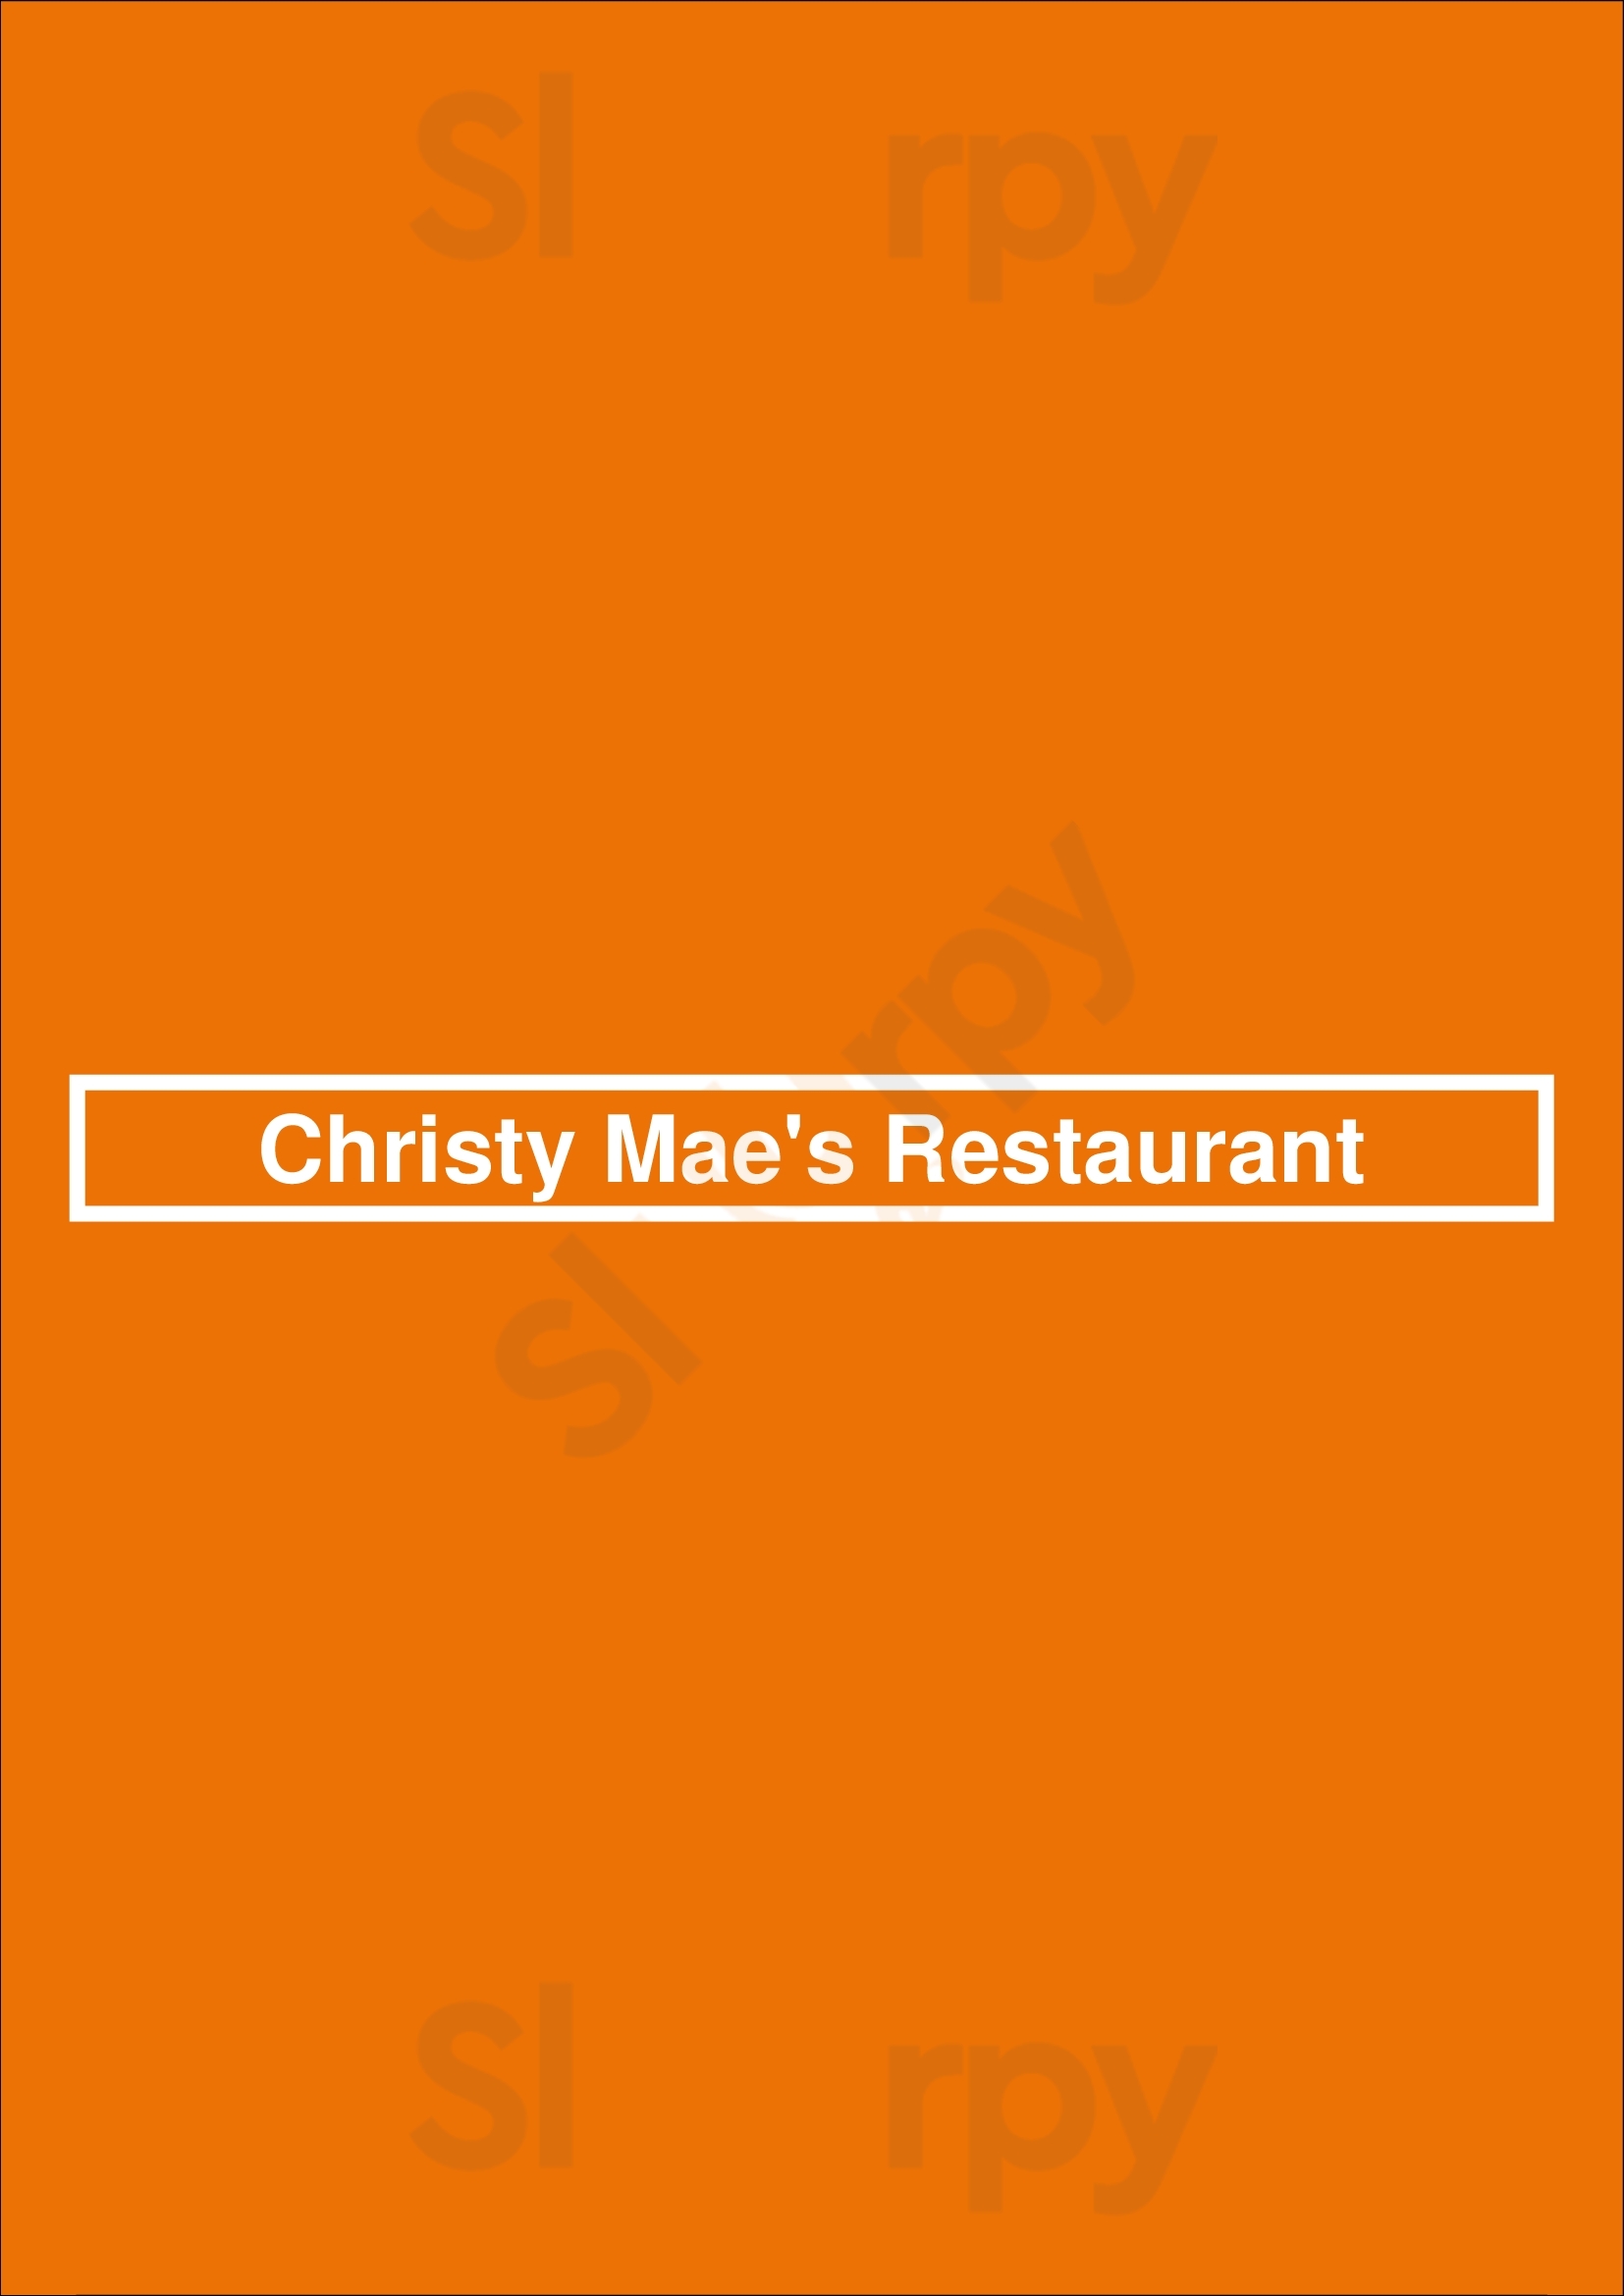 Christy Mae's Restaurant Albuquerque Menu - 1